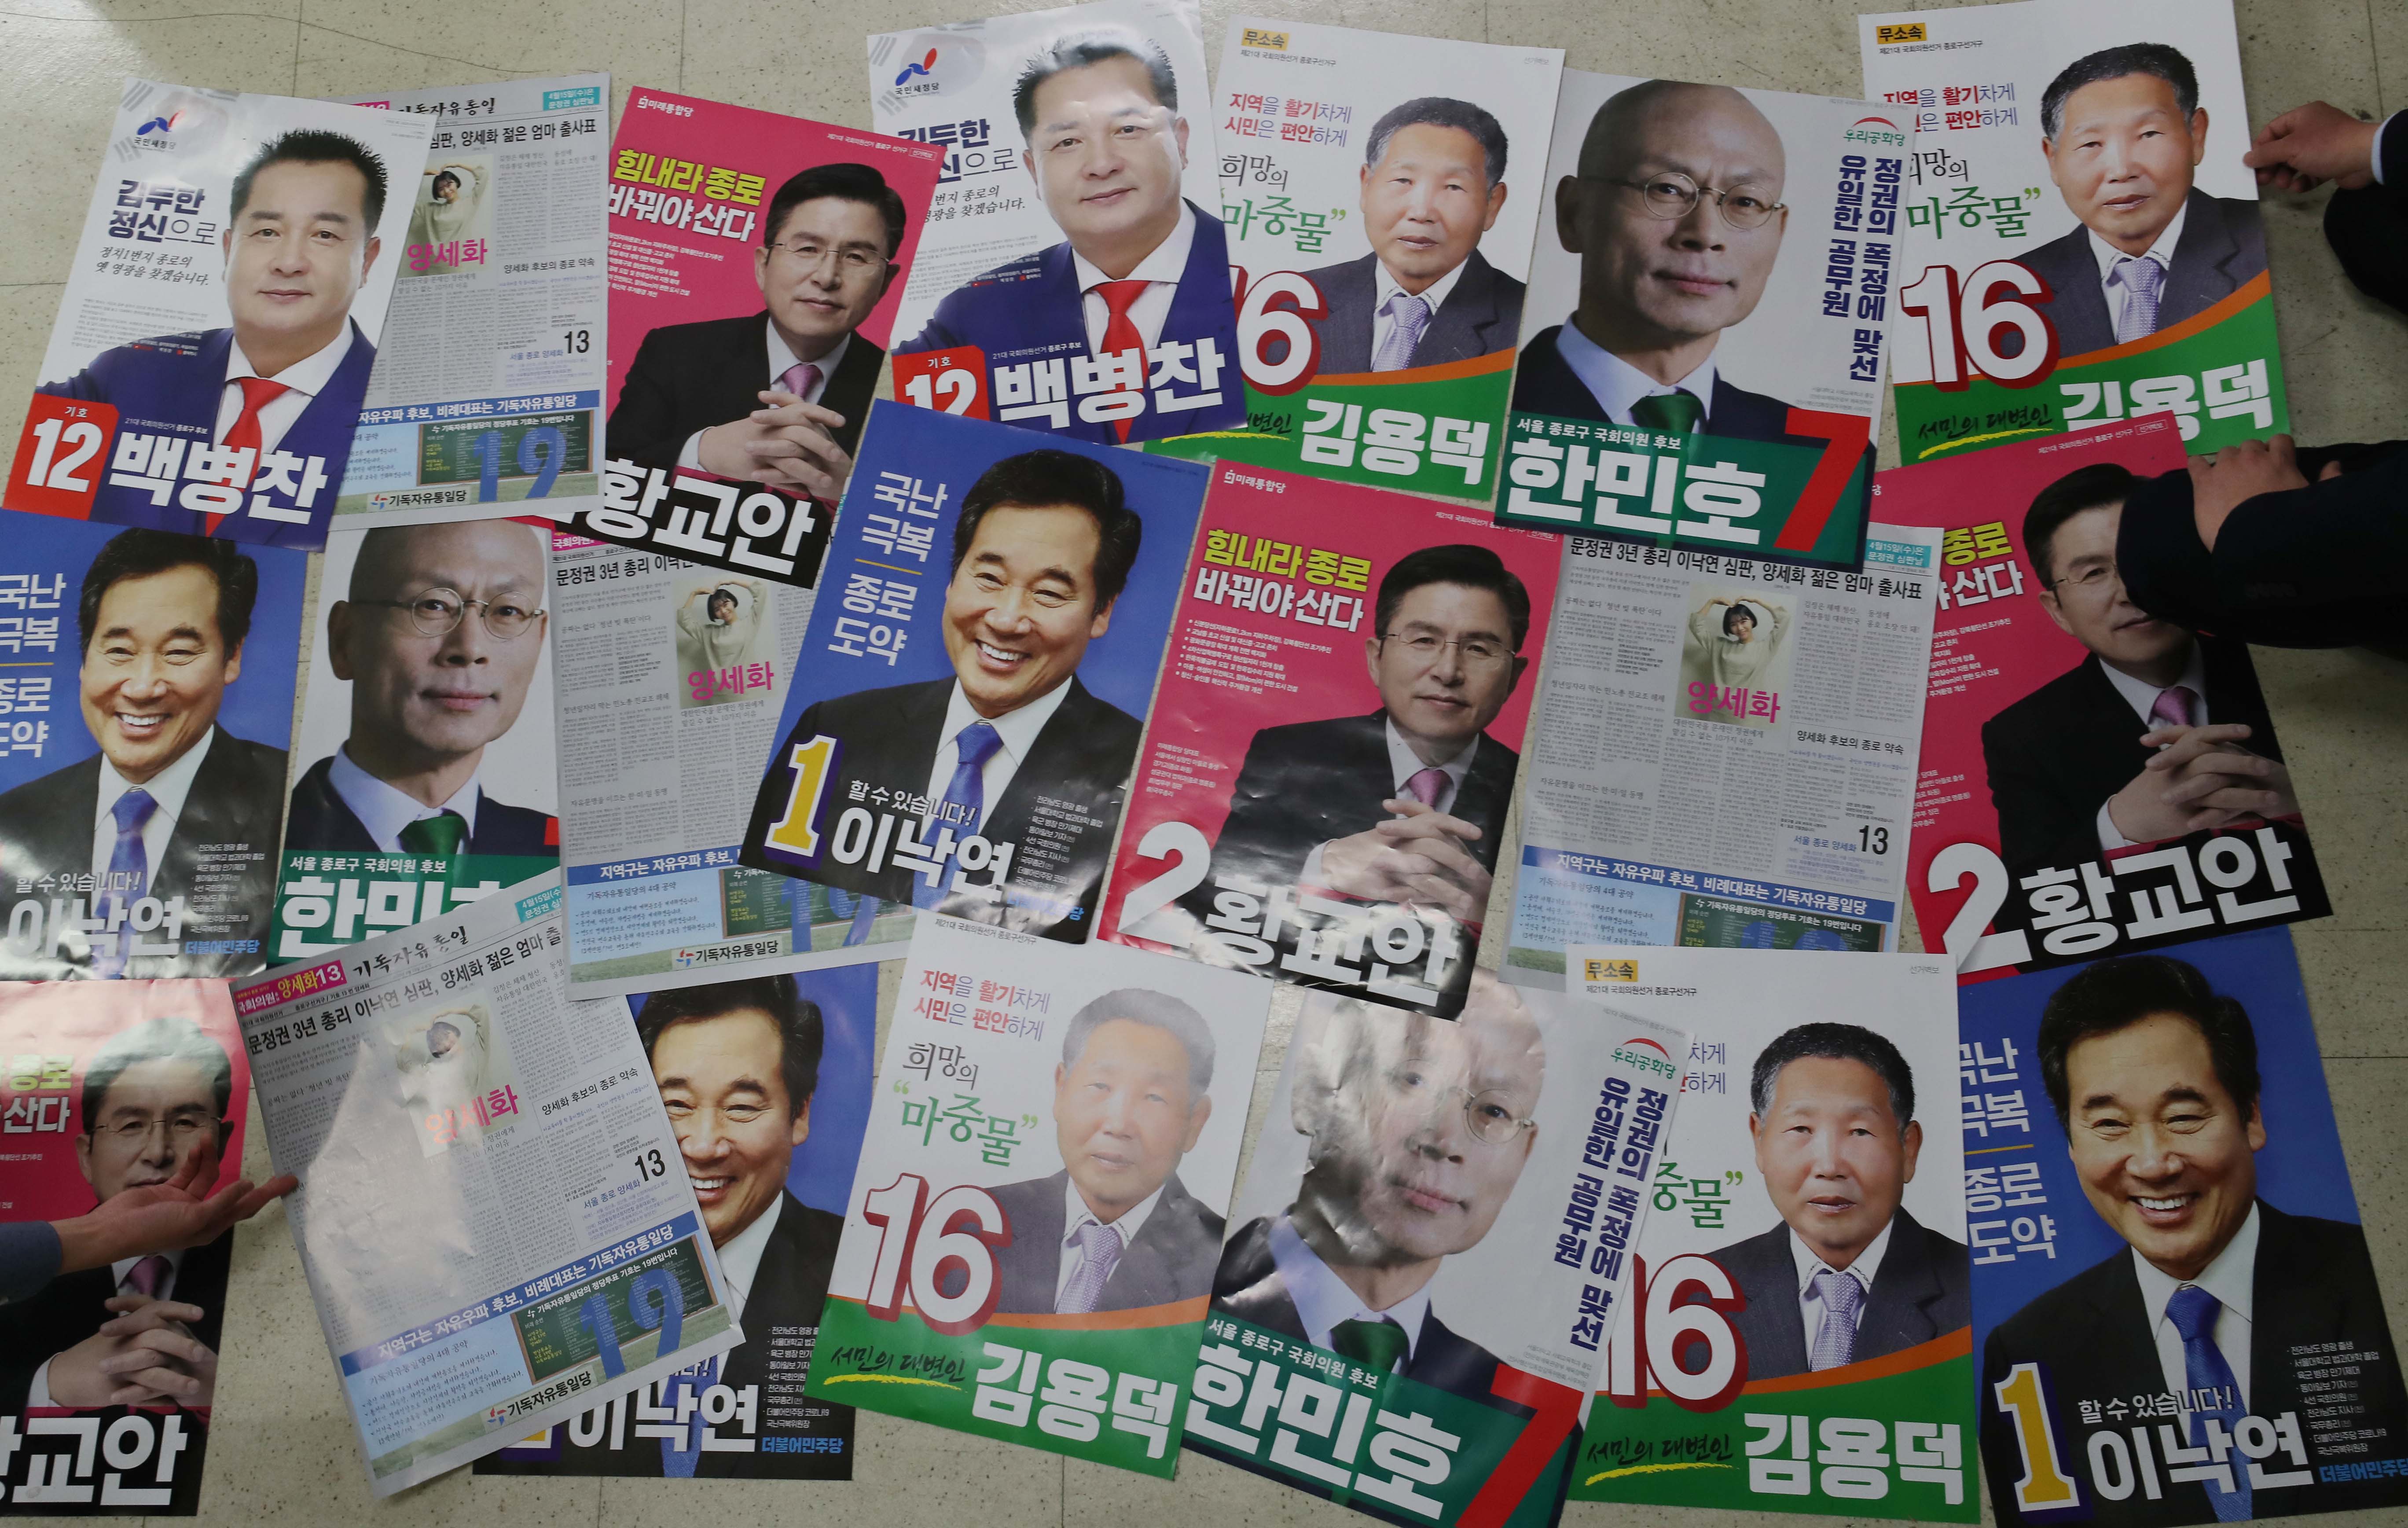 서울 종로에 출마한 후보자 선거 벽보